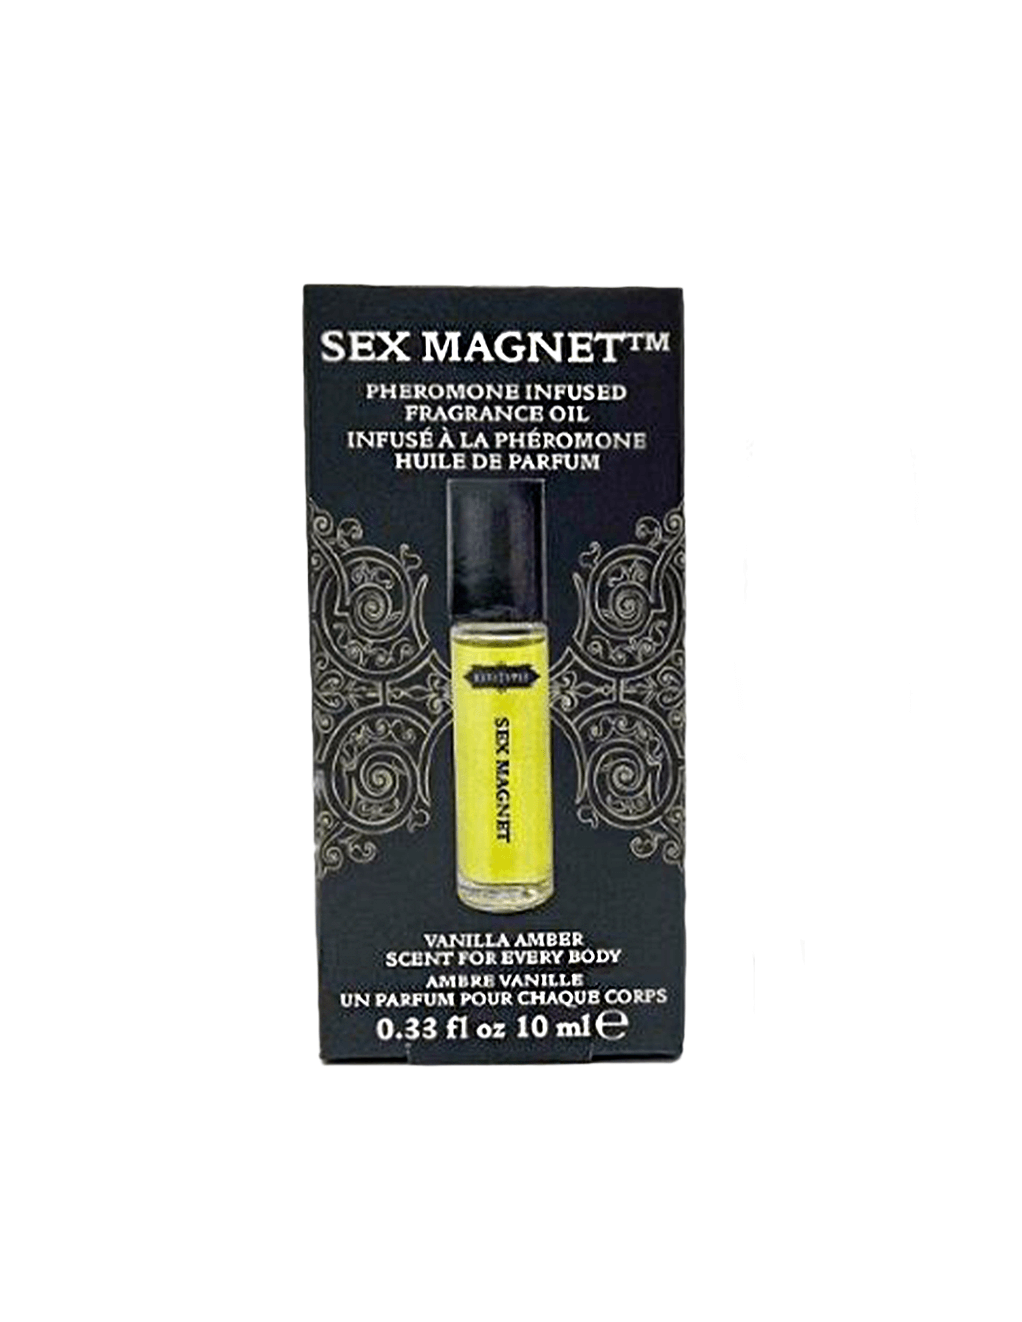 Kama Sutra Sex Magnet Pheromone Gift Set - Roll-On Fragrance